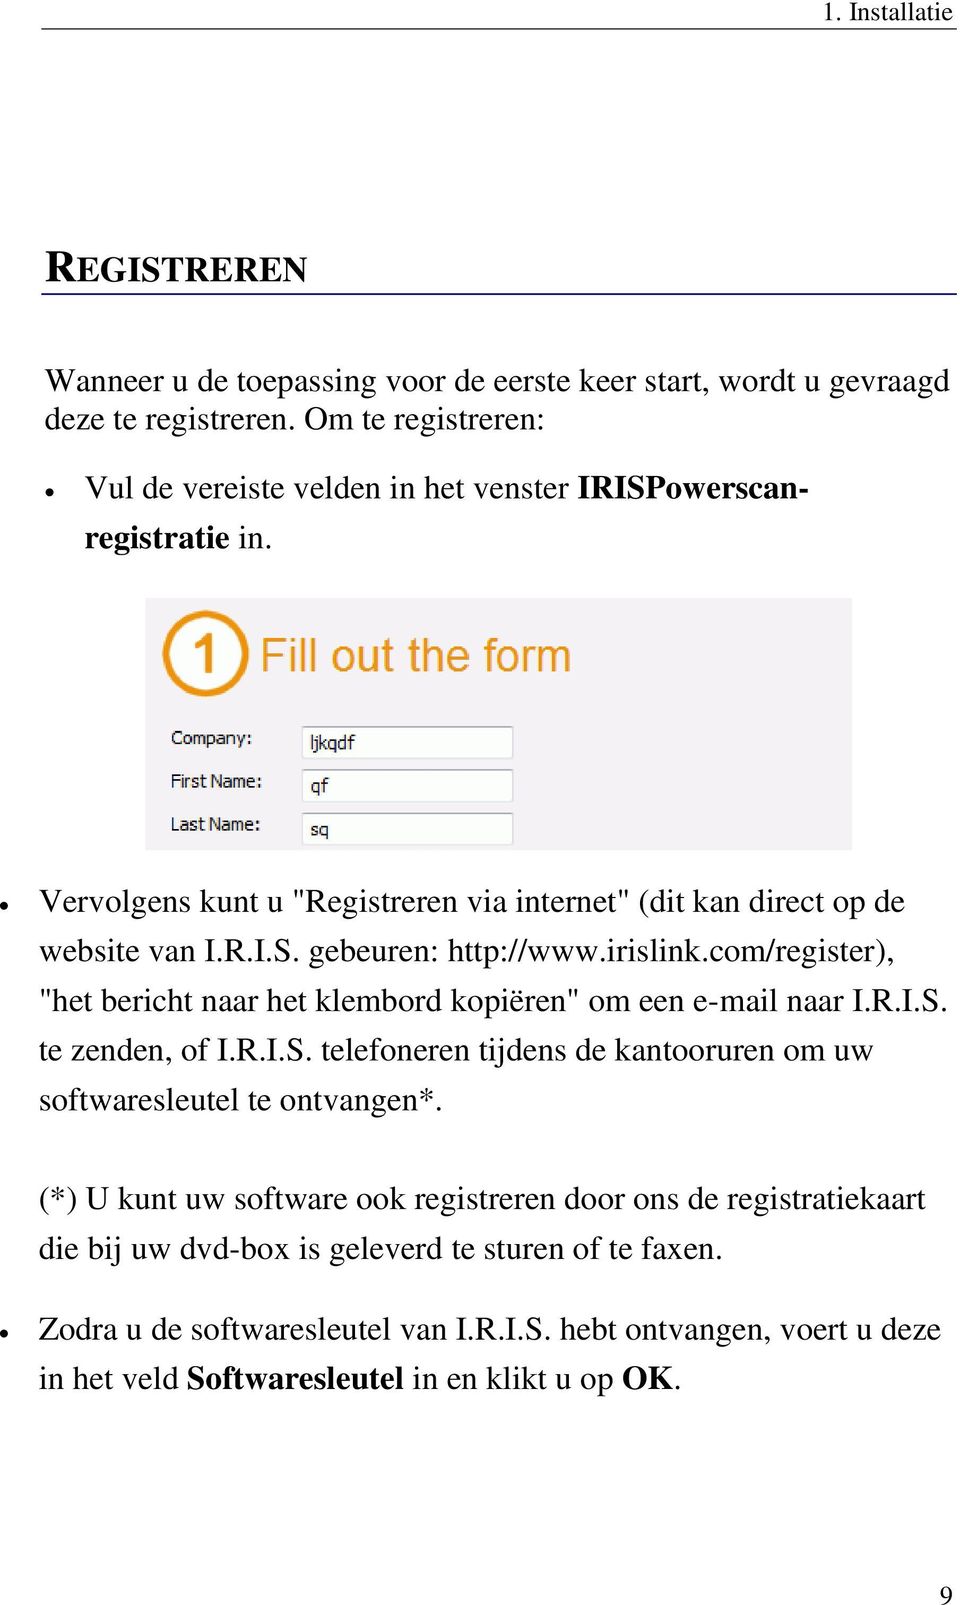 irislink.com/register), "het bericht naar het klembord kopiëren" om een e-mail naar I.R.I.S. te zenden, of I.R.I.S. telefoneren tijdens de kantooruren om uw softwaresleutel te ontvangen*.